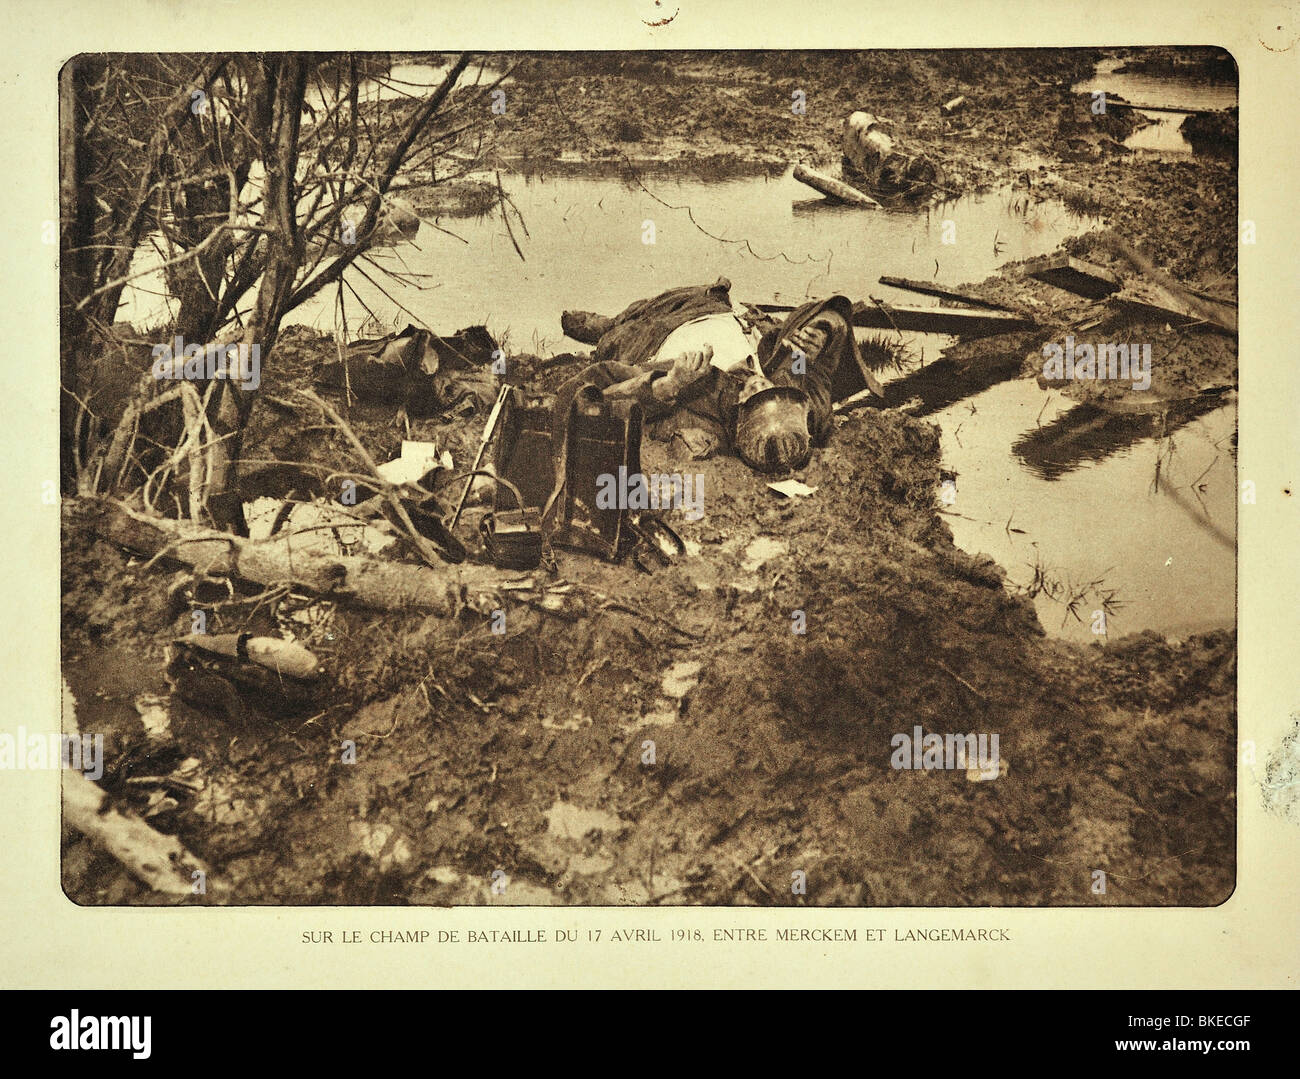 Cadavre de soldat allemand de la PREMIÈRE GUERRE MONDIALE morts tués dans l'action au champ de bataille à Merkem en Flandre occidentale pendant la Première Guerre mondiale, la Belgique Banque D'Images